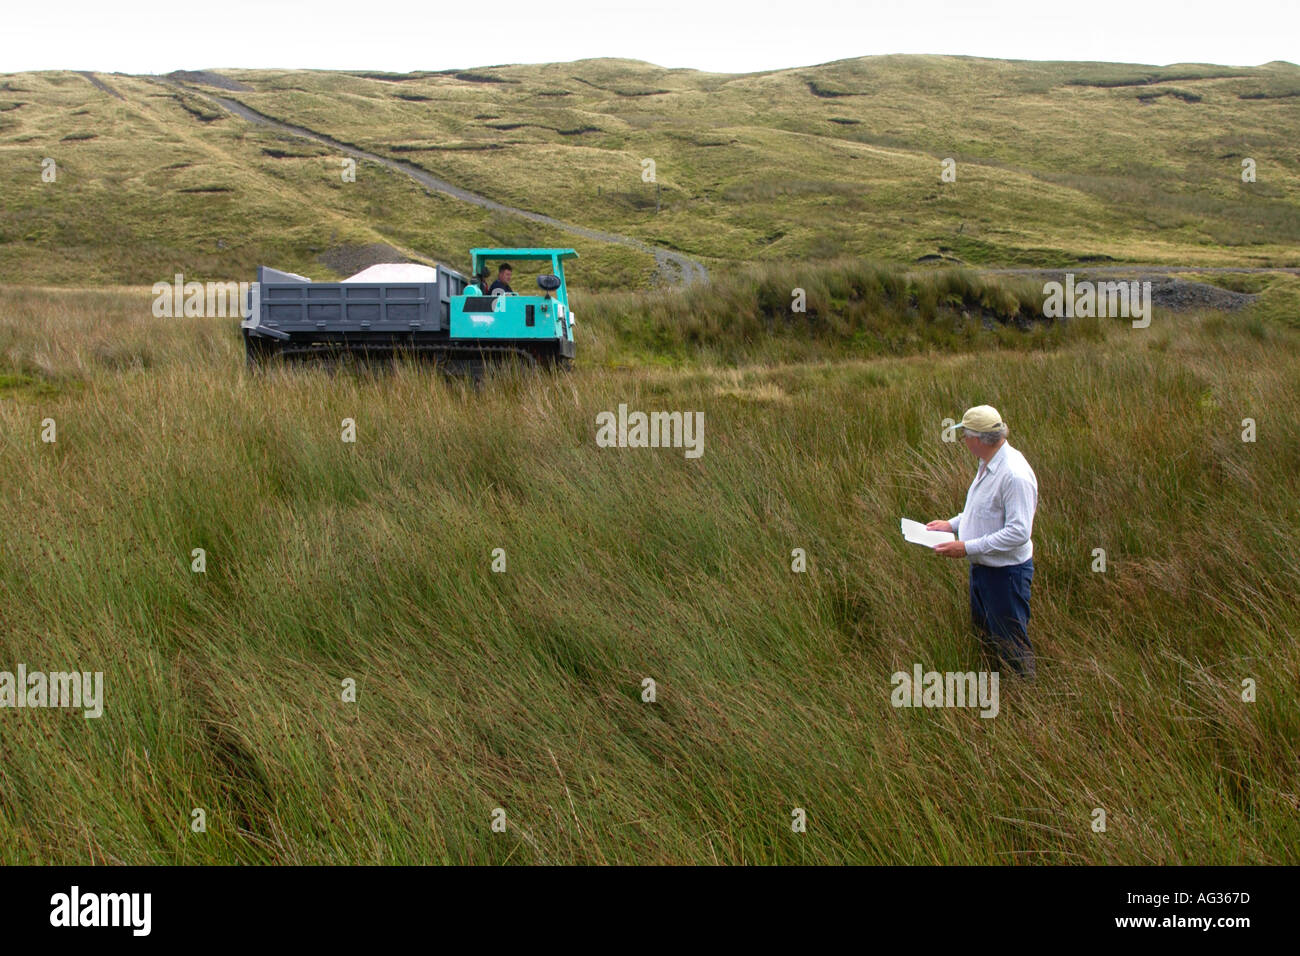 El Dr. Stephen Marsh Smith levantamientos topográficos para esparcir cal cerca de la cumbre de Plynlimon cerca Eisteddfa Gurig, Ceredigion, Mid-Wales Foto de stock